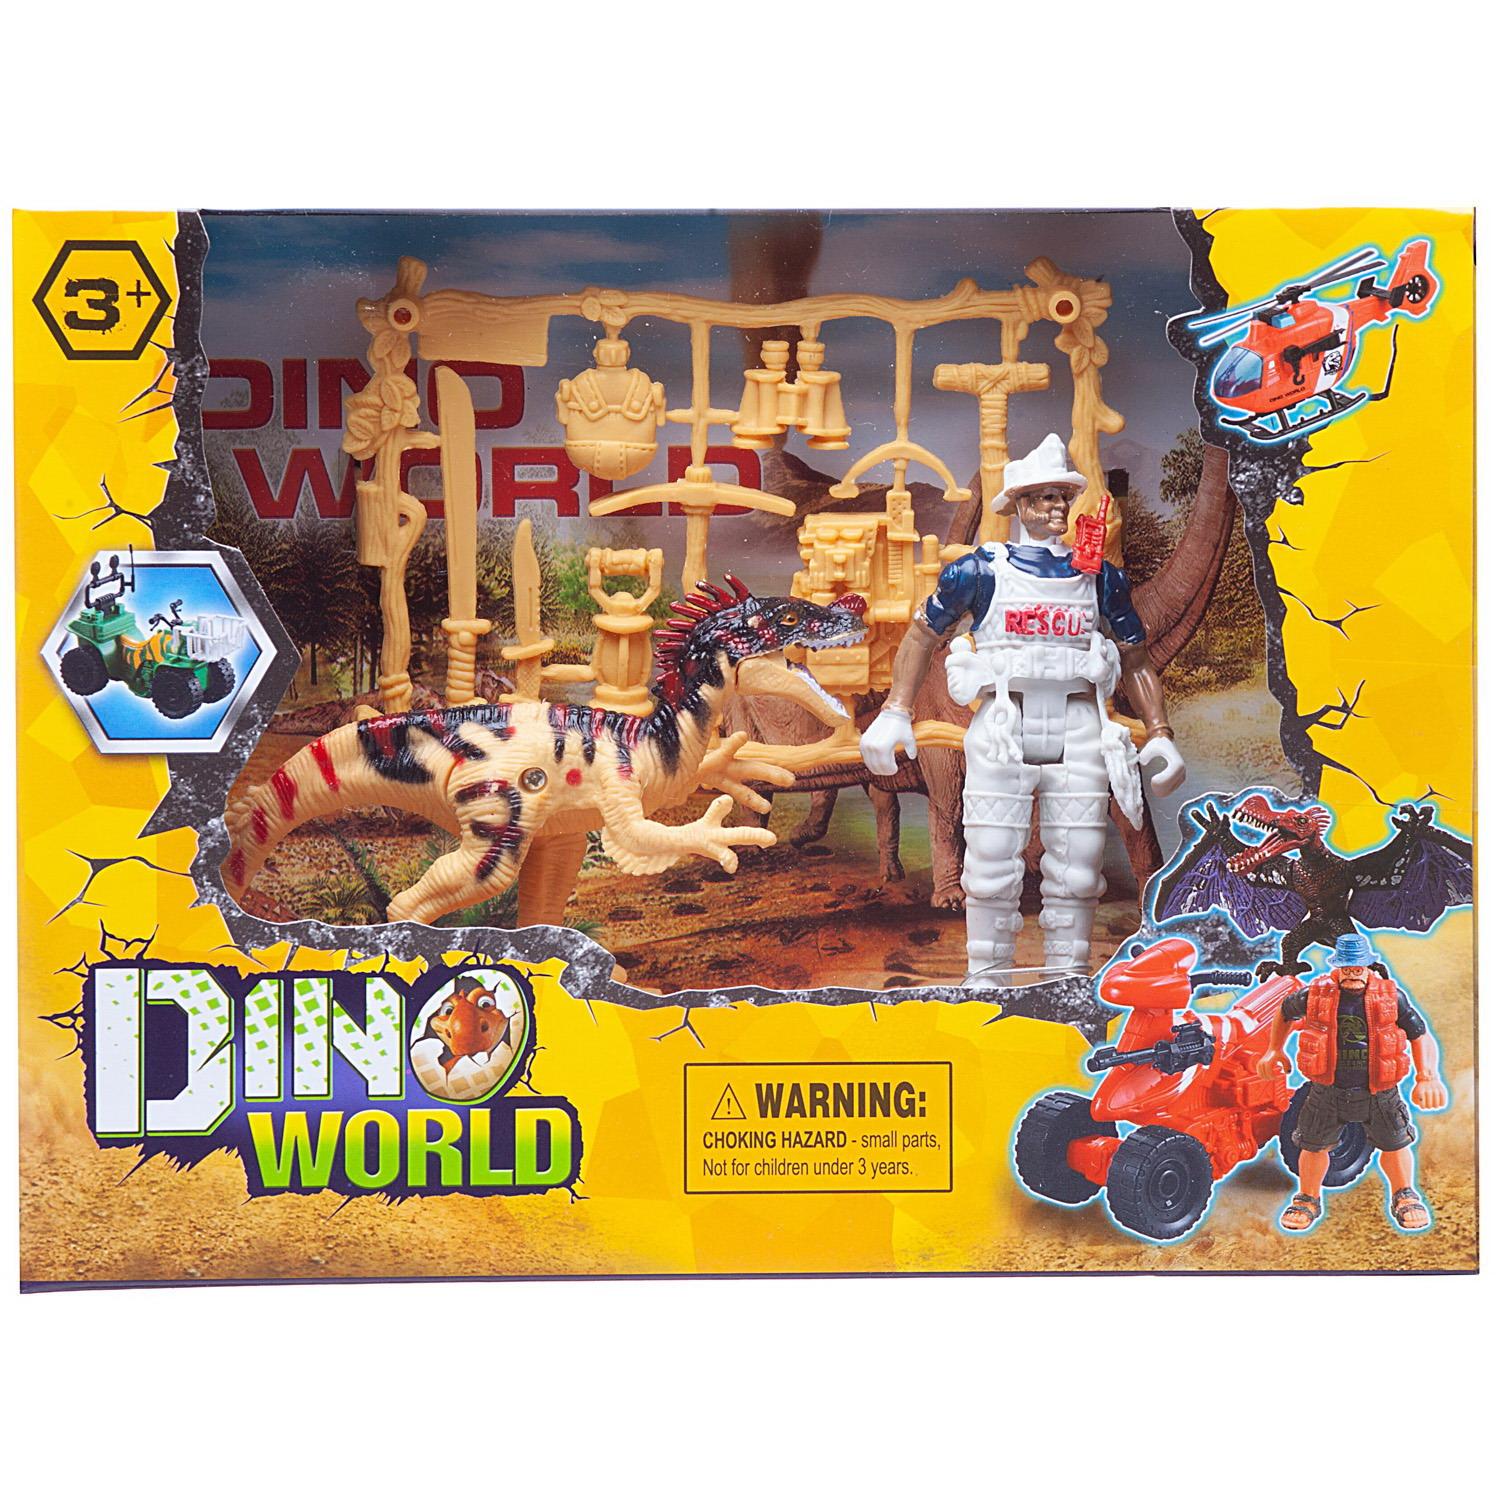 фото Игровой набор junfa мир динозавров (динозавр, фигурка человека, акссесуары) junfa toys